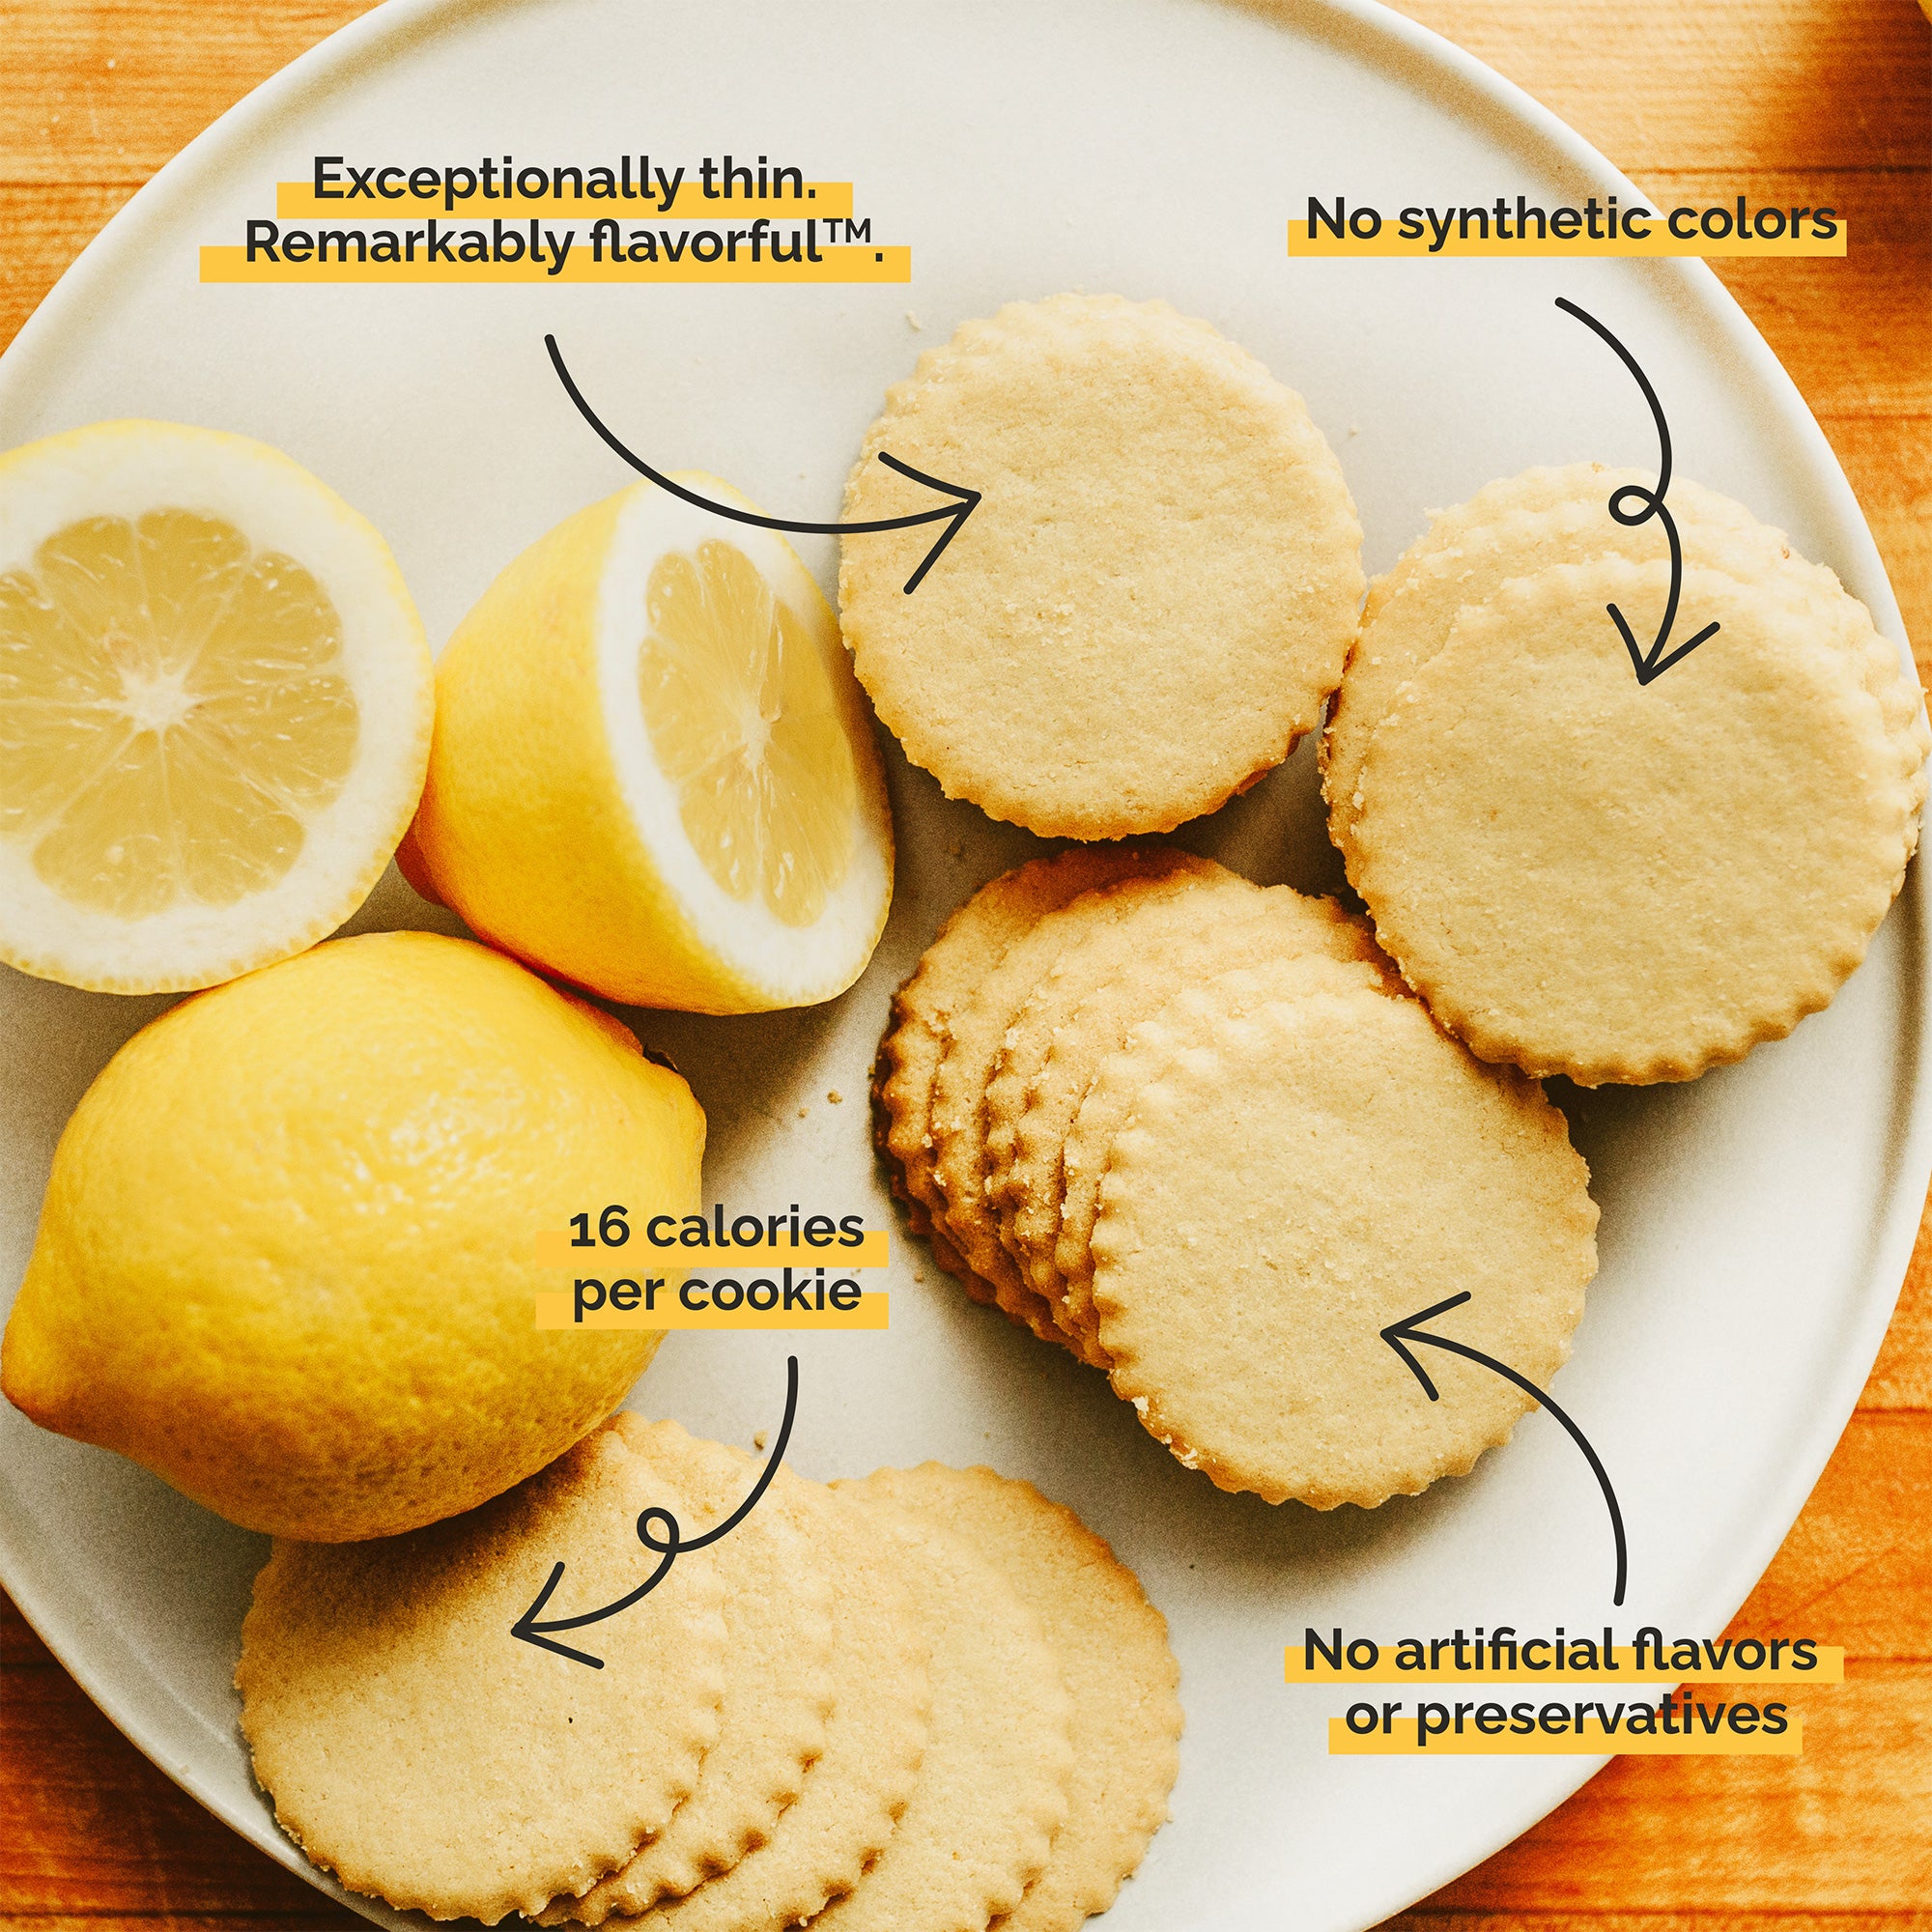 Meyer Lemon, Tripler Ginger and Brownie Crisp Cookies 3-pack